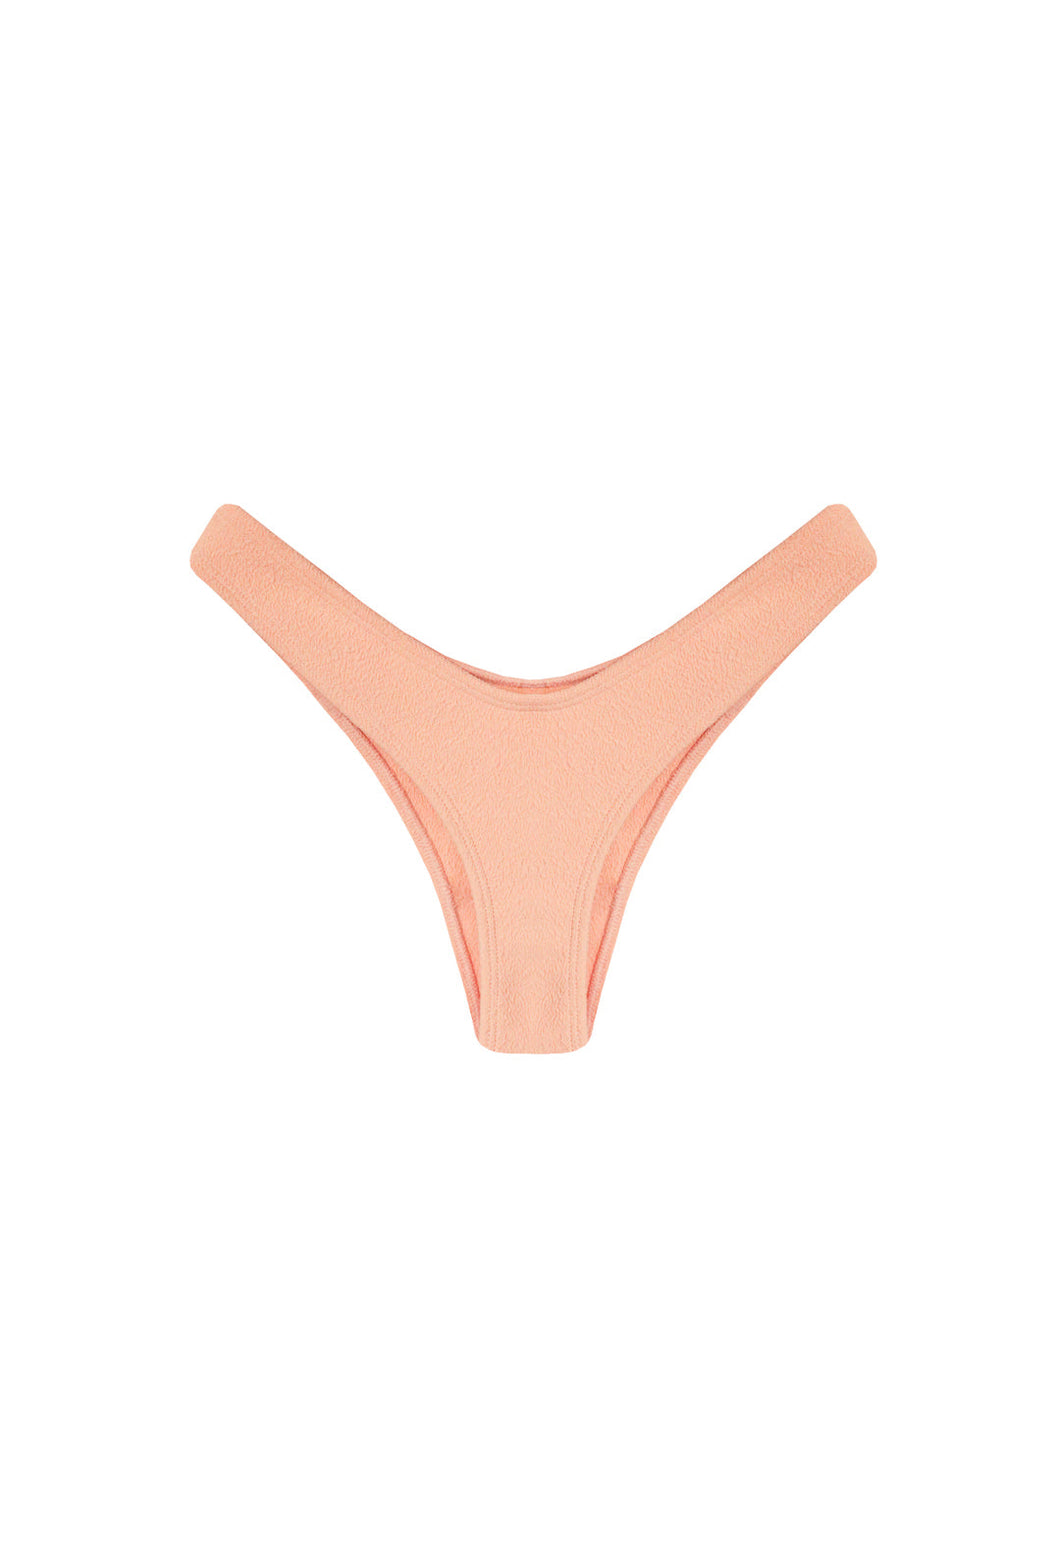 Hang Glider Bikini Bottom - Peach